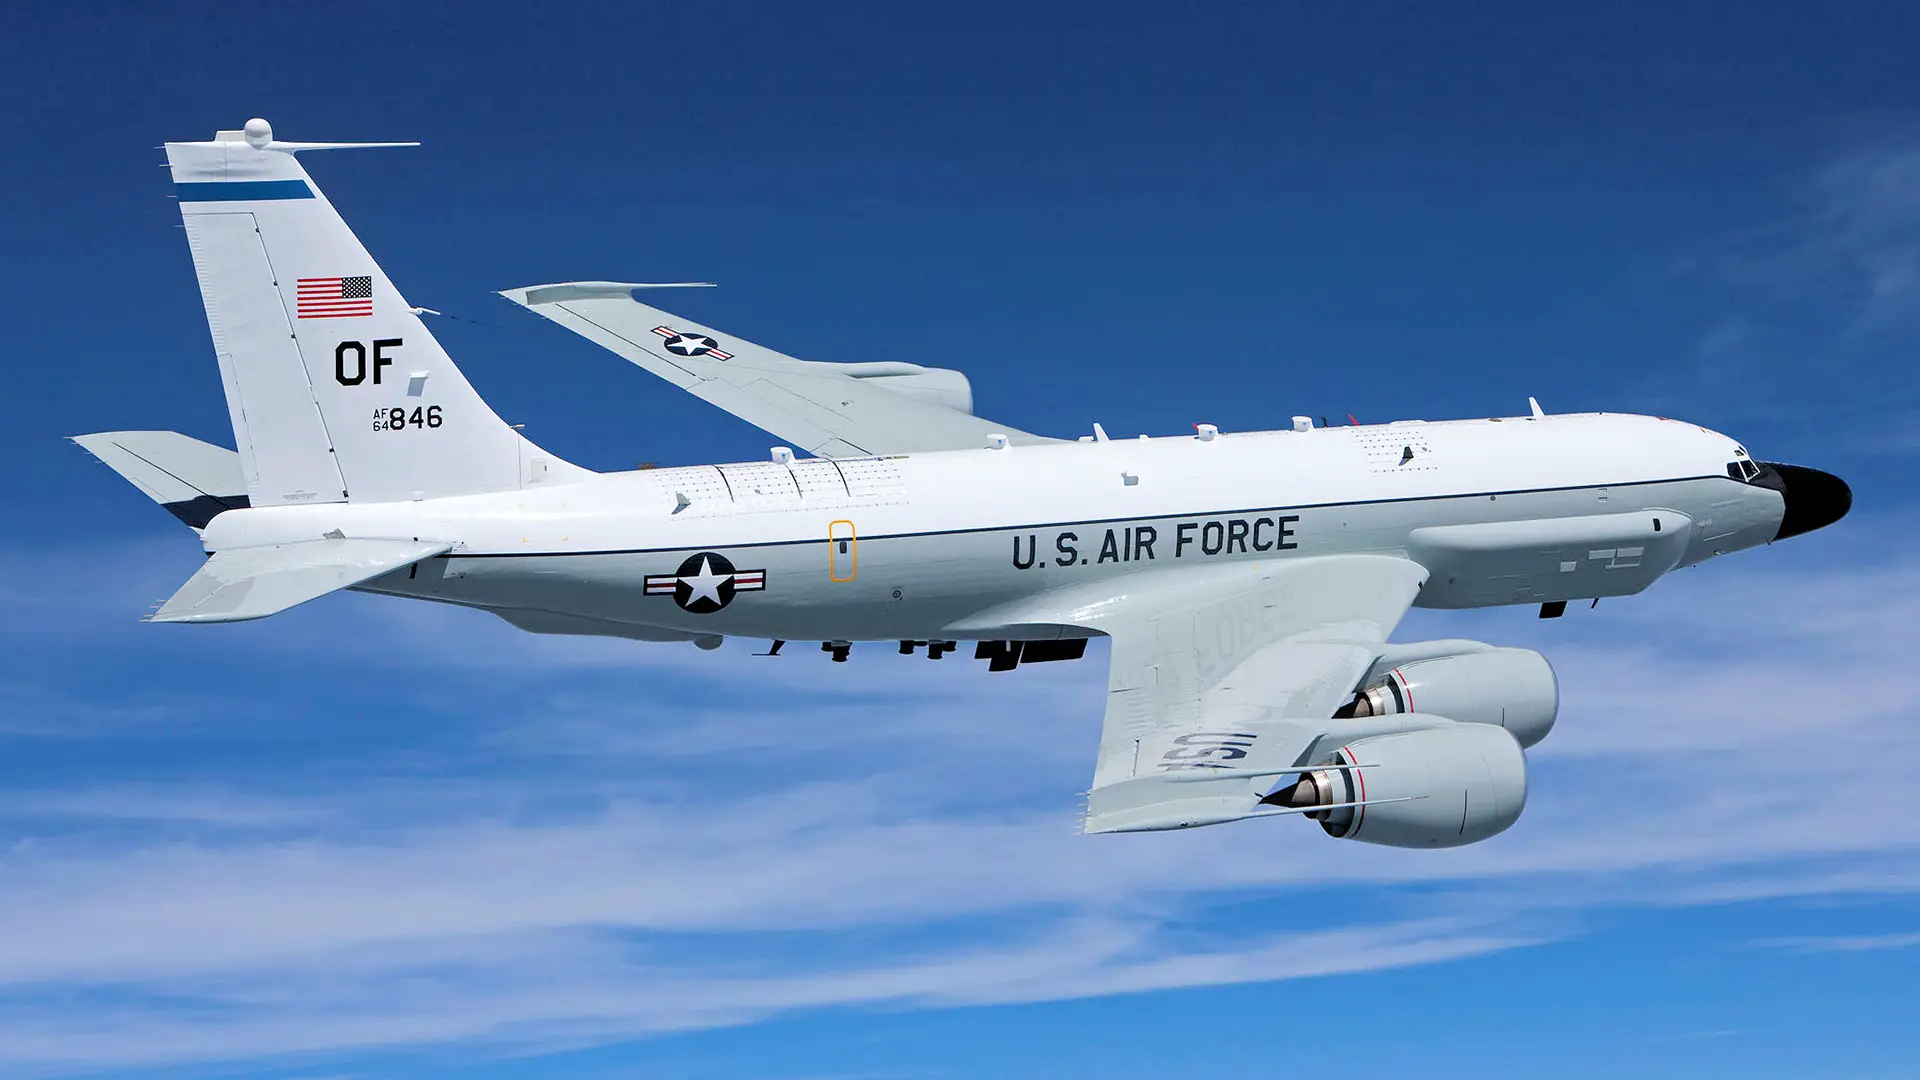 RC-135V/W Rivet Joint wykonuje bezprecedensową misję w Europie - amerykański samolot strategiczny przelatuje wzdłuż granicy fińsko-rosyjskiej